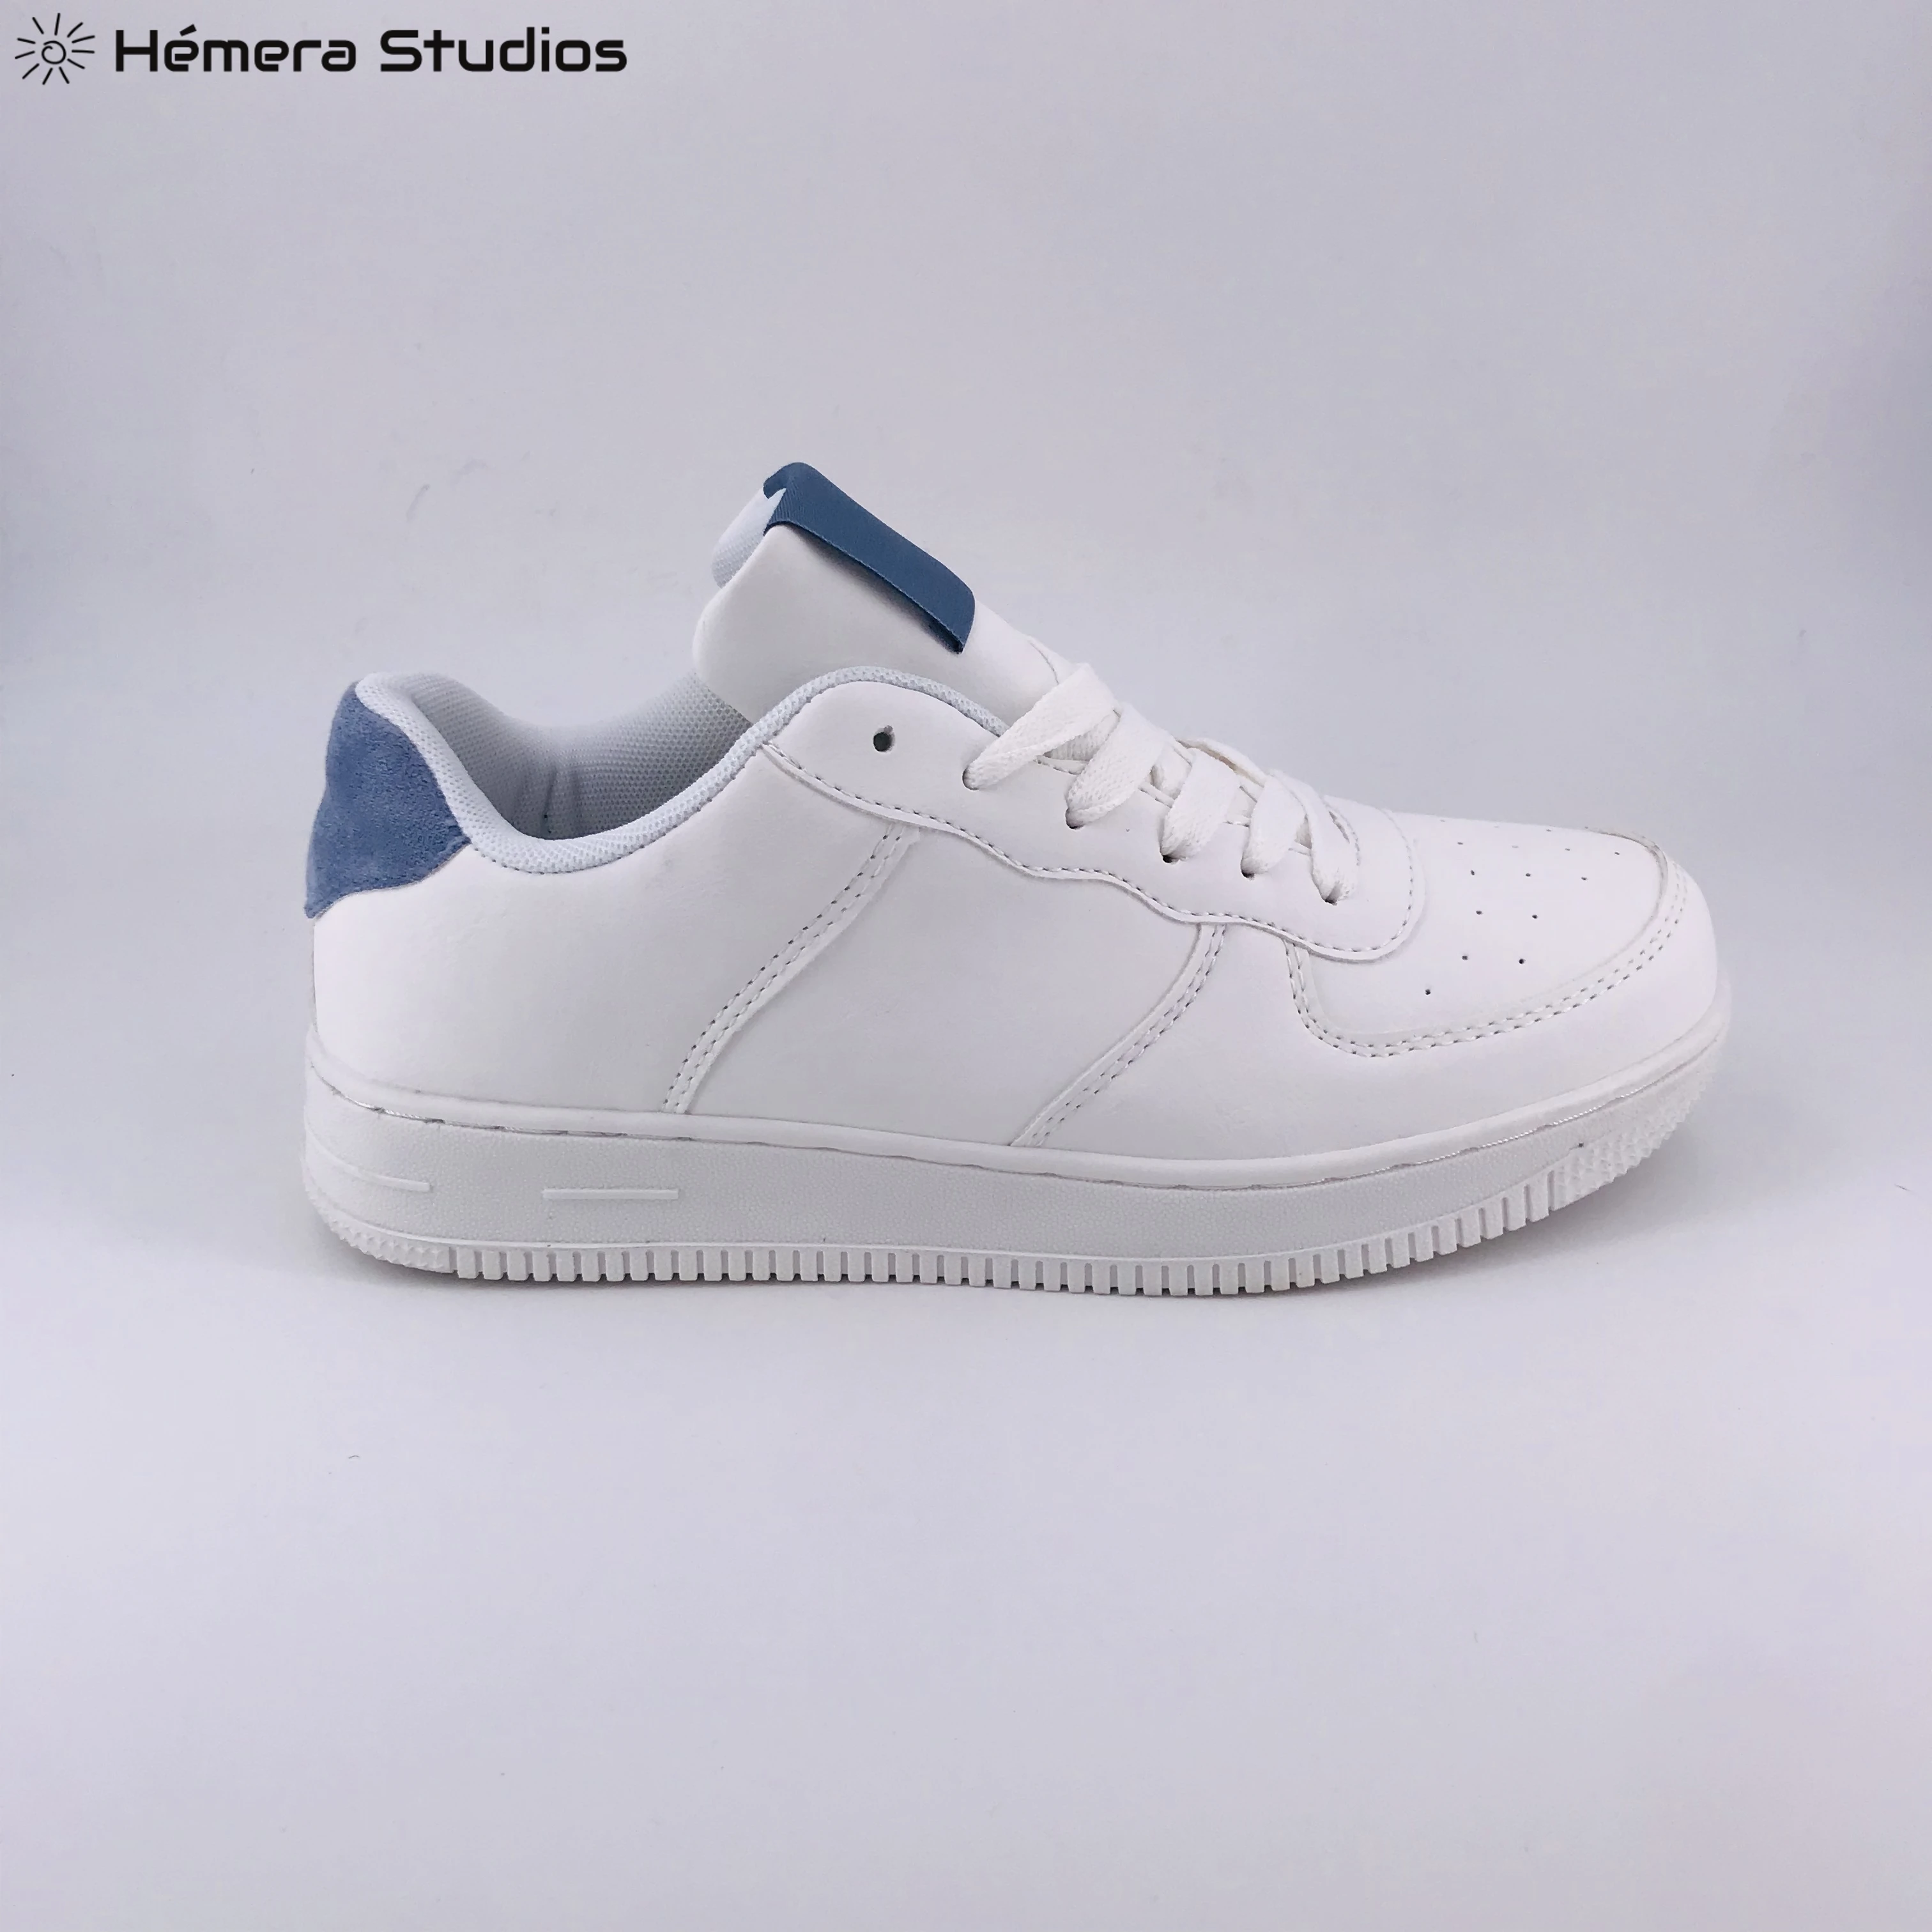 ZAPATILLAS MUJER Zapatillas deportivos 2019 a la moda con plataforma blanca para mujer, zapatos casuales de marca de mujer|Zapatillas| - AliExpress